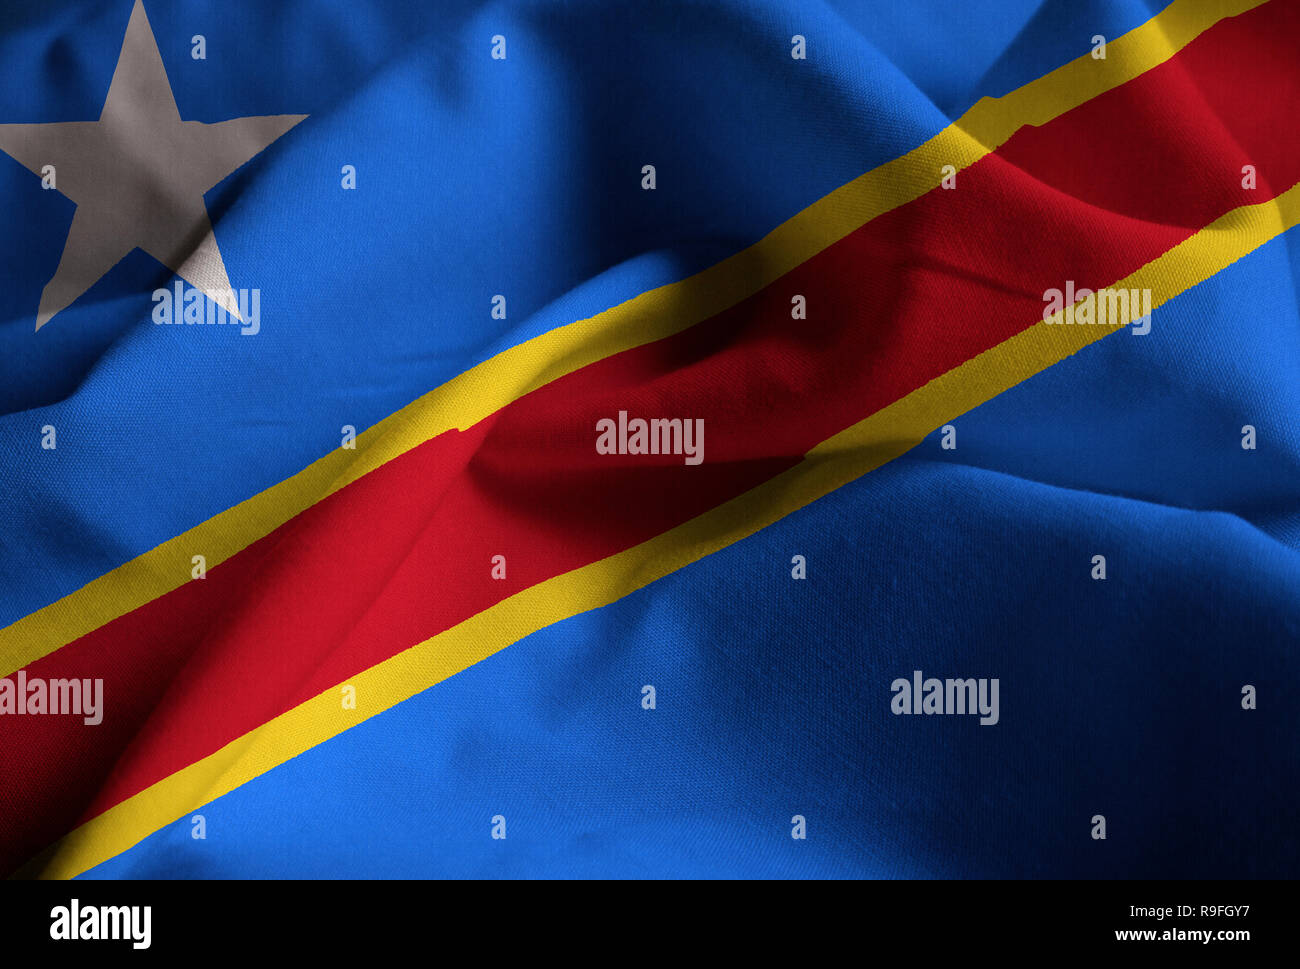 Detailansicht der gekräuselten Demokratische Republik Kongo Flagge, der Demokratischen Republik Kongo Flagge weht im Wind Stockfoto